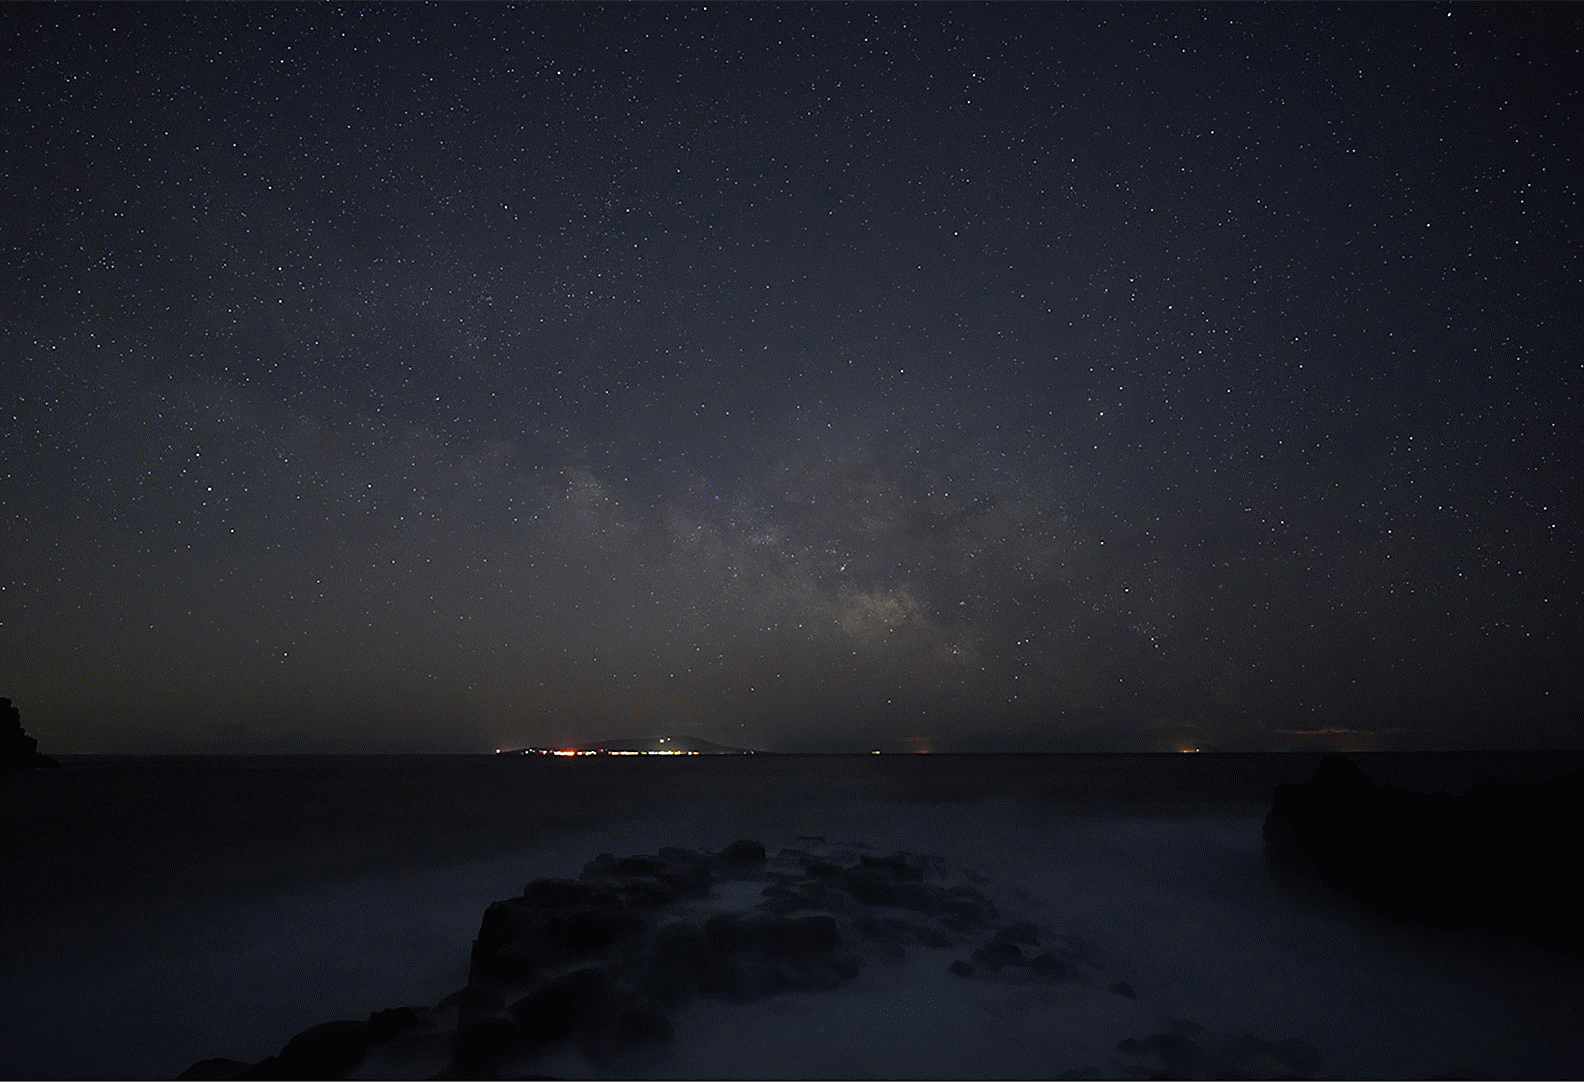 Φωτογράφιση αστεριών που δείχνει τον γαλαξία πάνω από τη θάλασσα